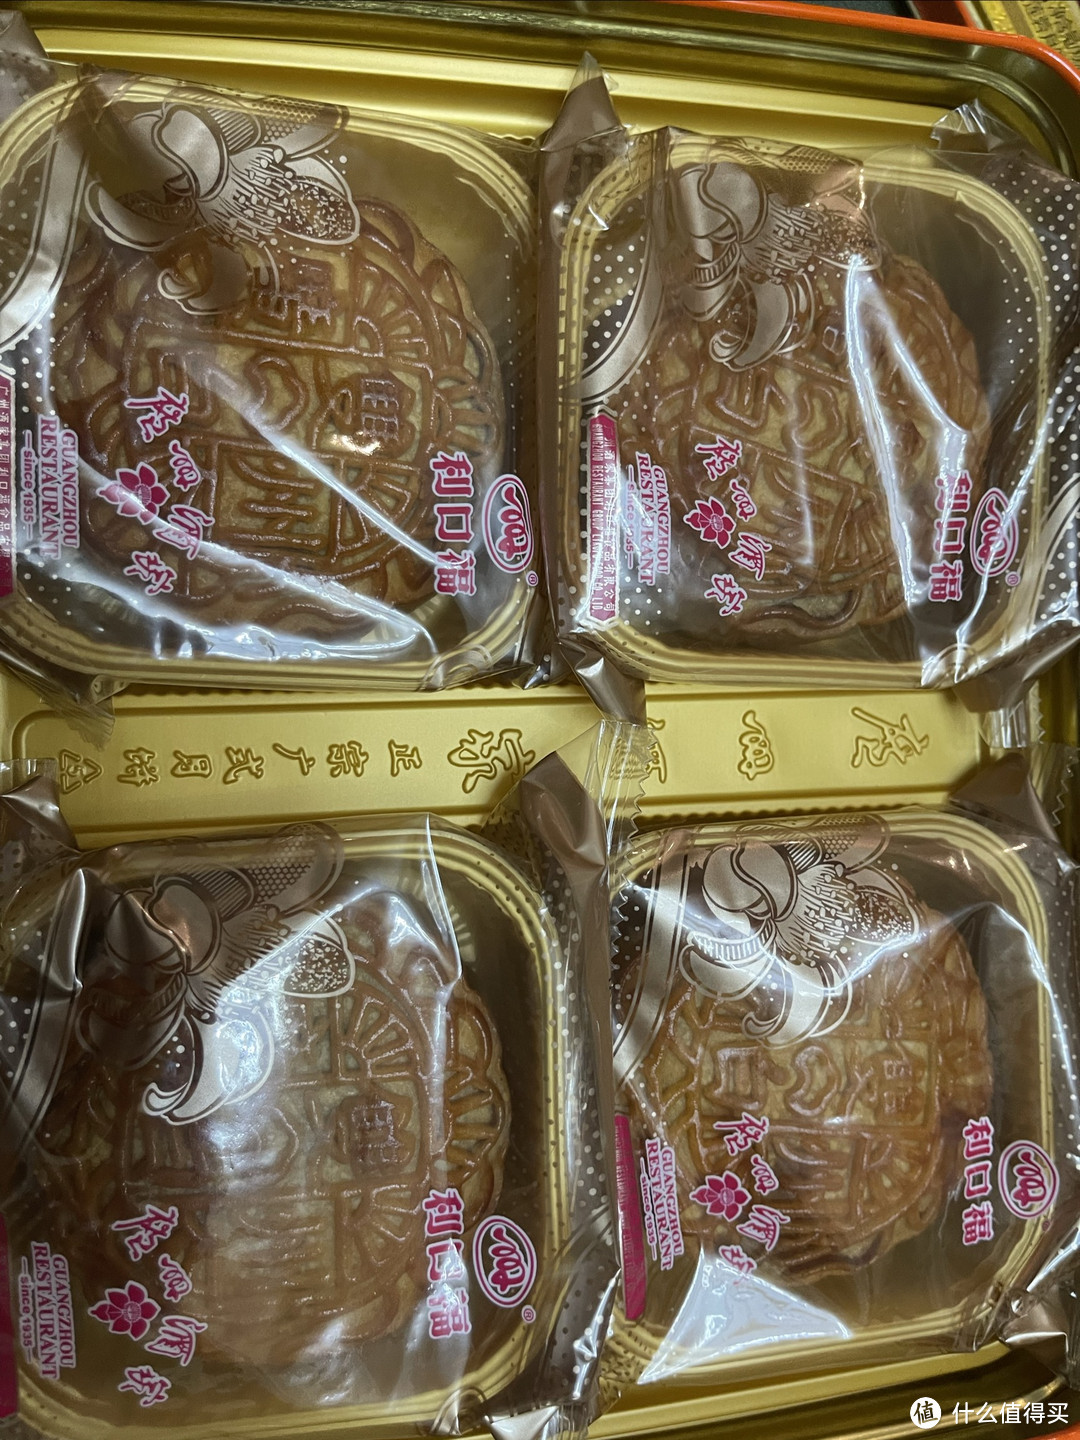 中秋节还是喜欢吃比较传统的月饼，花里胡哨的月饼不如这一口老味道。